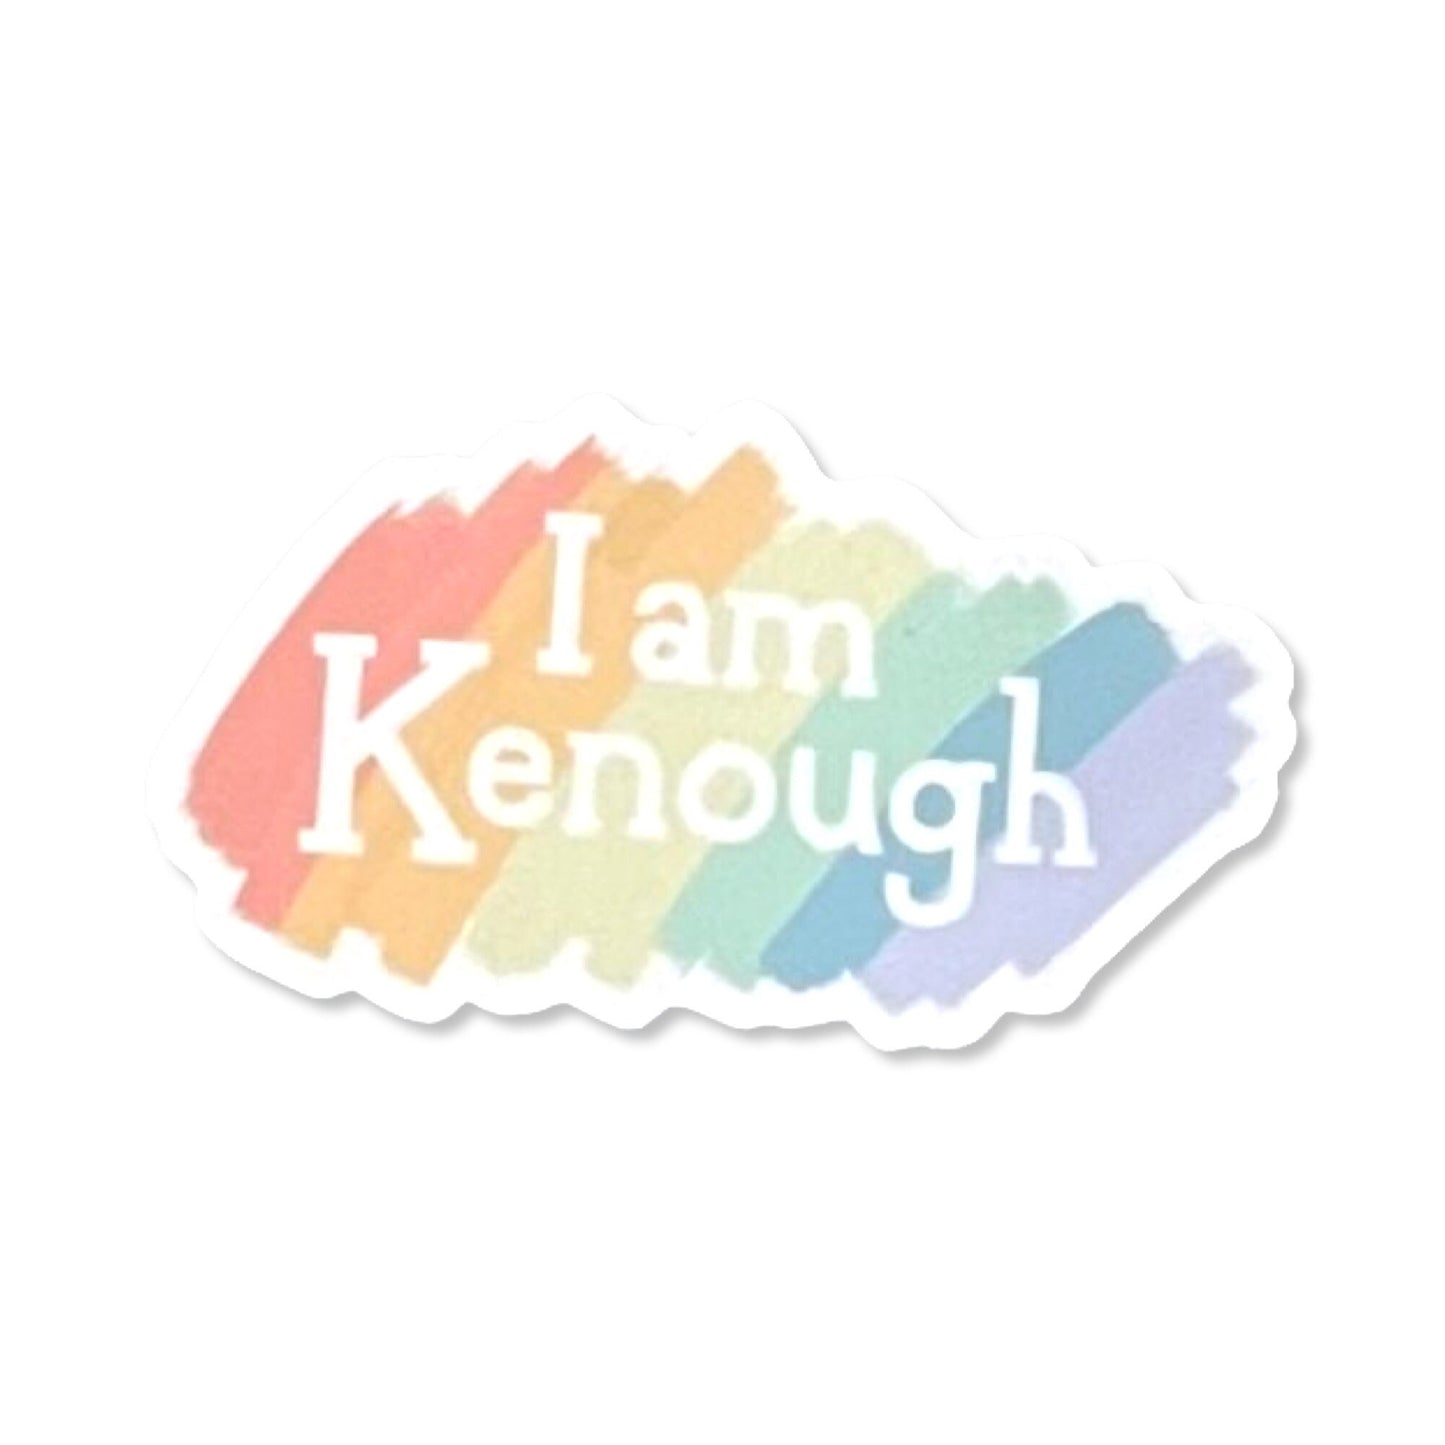 I am Kenough Waterproof Sticker- barbie inspired